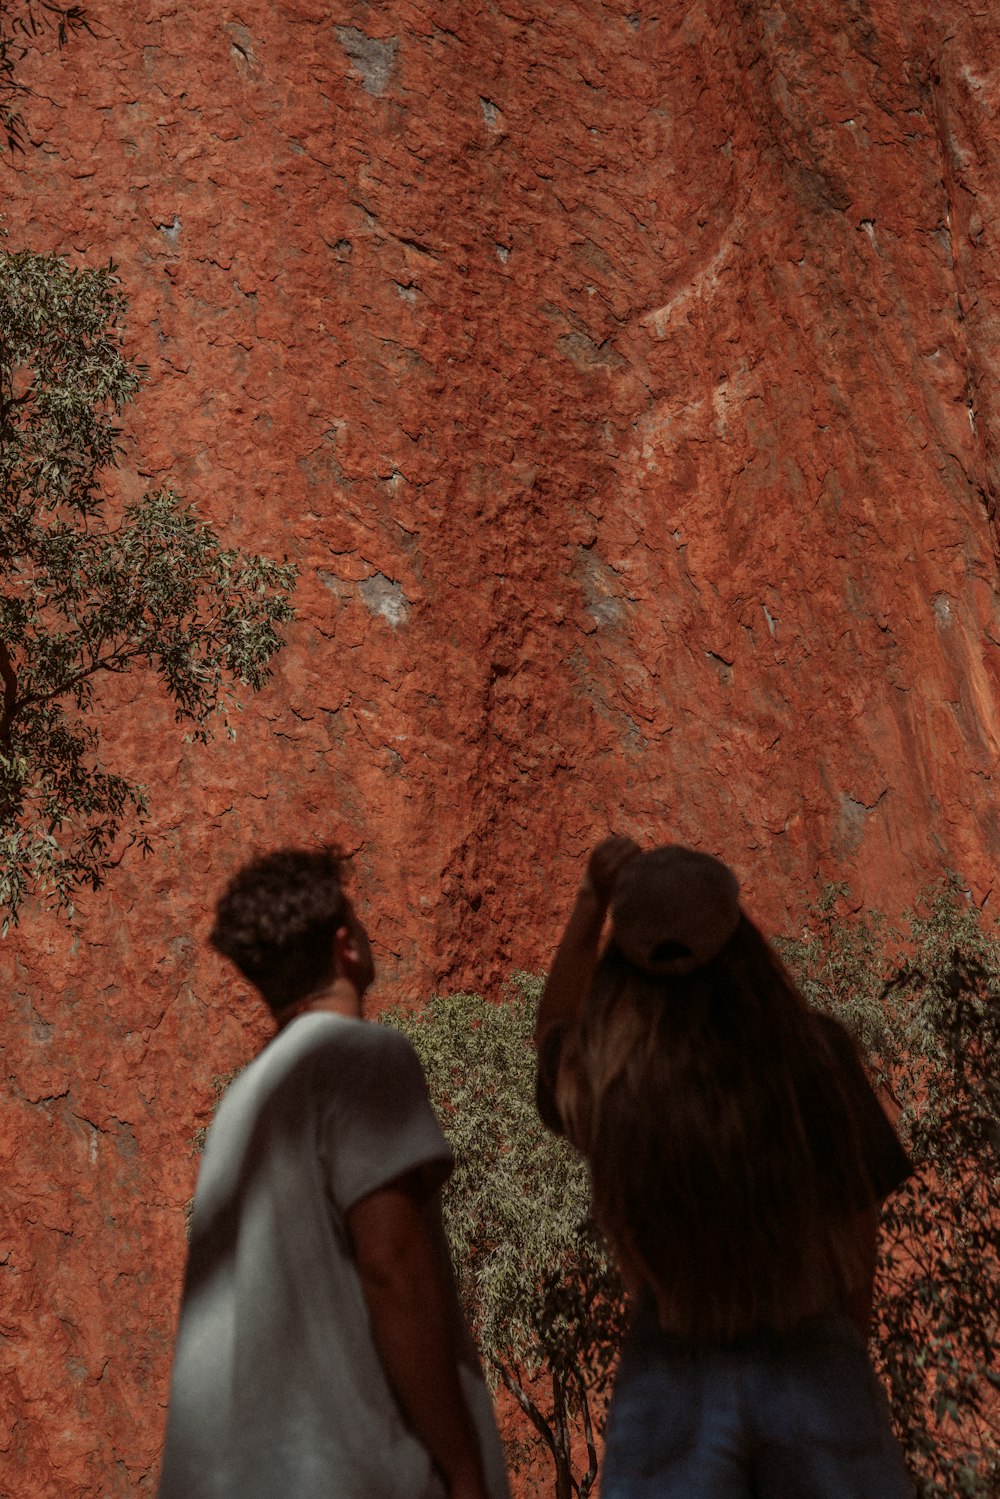 Uomo e donna in piedi accanto alla formazione rocciosa marrone durante il giorno